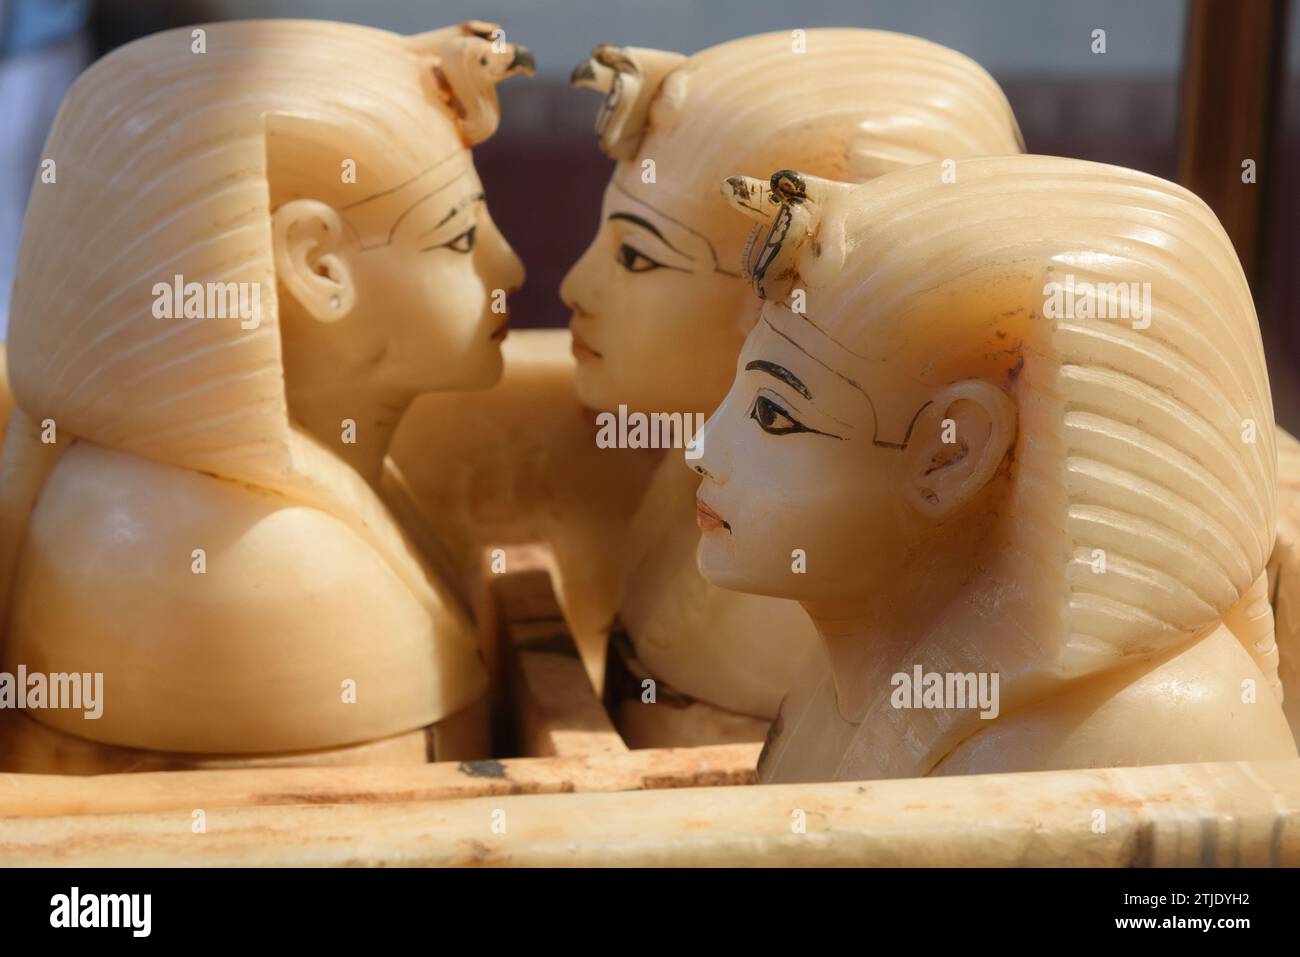 Alabaster Canopic Chest von Tutanchamun. Ägyptisches Museum, Kairo. An der Ostwand der Schatzkammer befand sich ein hoher, vergoldeter Schrein mit der Kanopenküste, in der Tutanchamuns innere Organe nach der Mumifizierung platziert wurden. Kanopengläser schützten Tutanchamuns innere Organe. Die Gläser wurden hergestellt, um die Organe aufzunehmen, die während der Mumifizierung aus dem Körper entfernt wurden: Lunge, Leber, Darm und Magen. Jedes Organ wurde von einem der vier Söhne des Horus geschützt: Hapy (Lunge), Imsety (Leber), Duamutef (Magen) und Qebehsenuef (Darm). Stockfoto